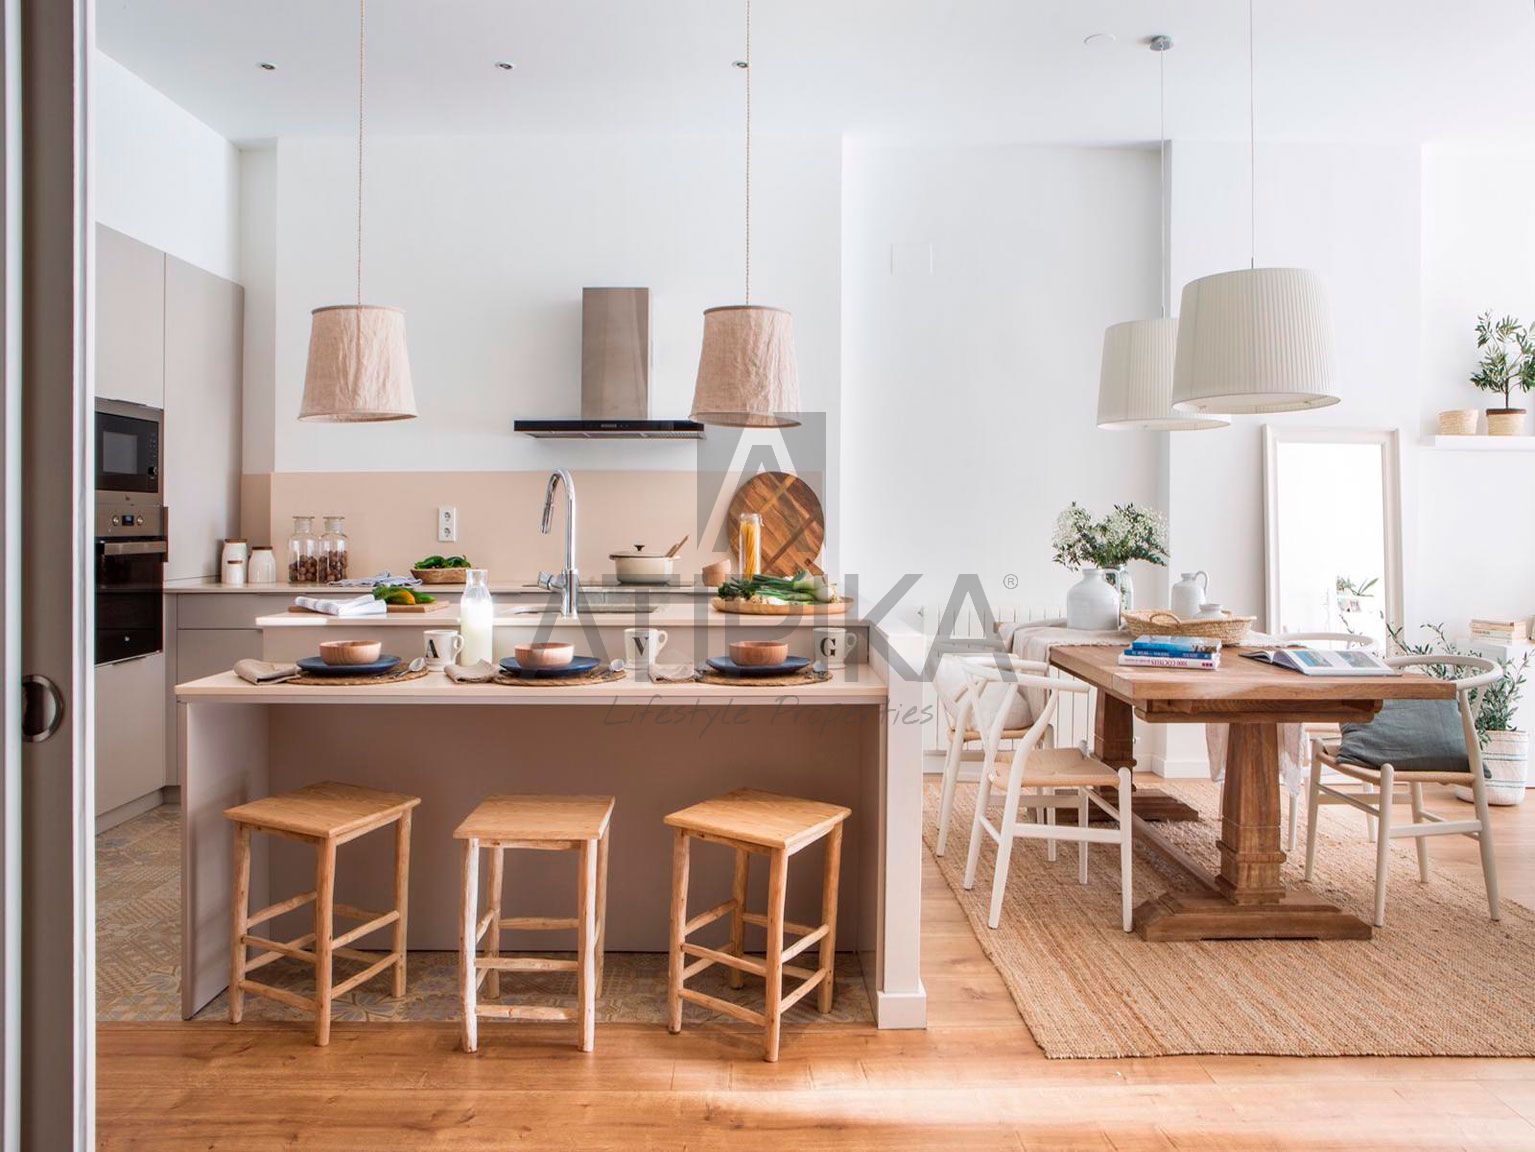 El privilegio de vivir en la zona alta de Barcelona - Atipika Lifestyle Properties 2023